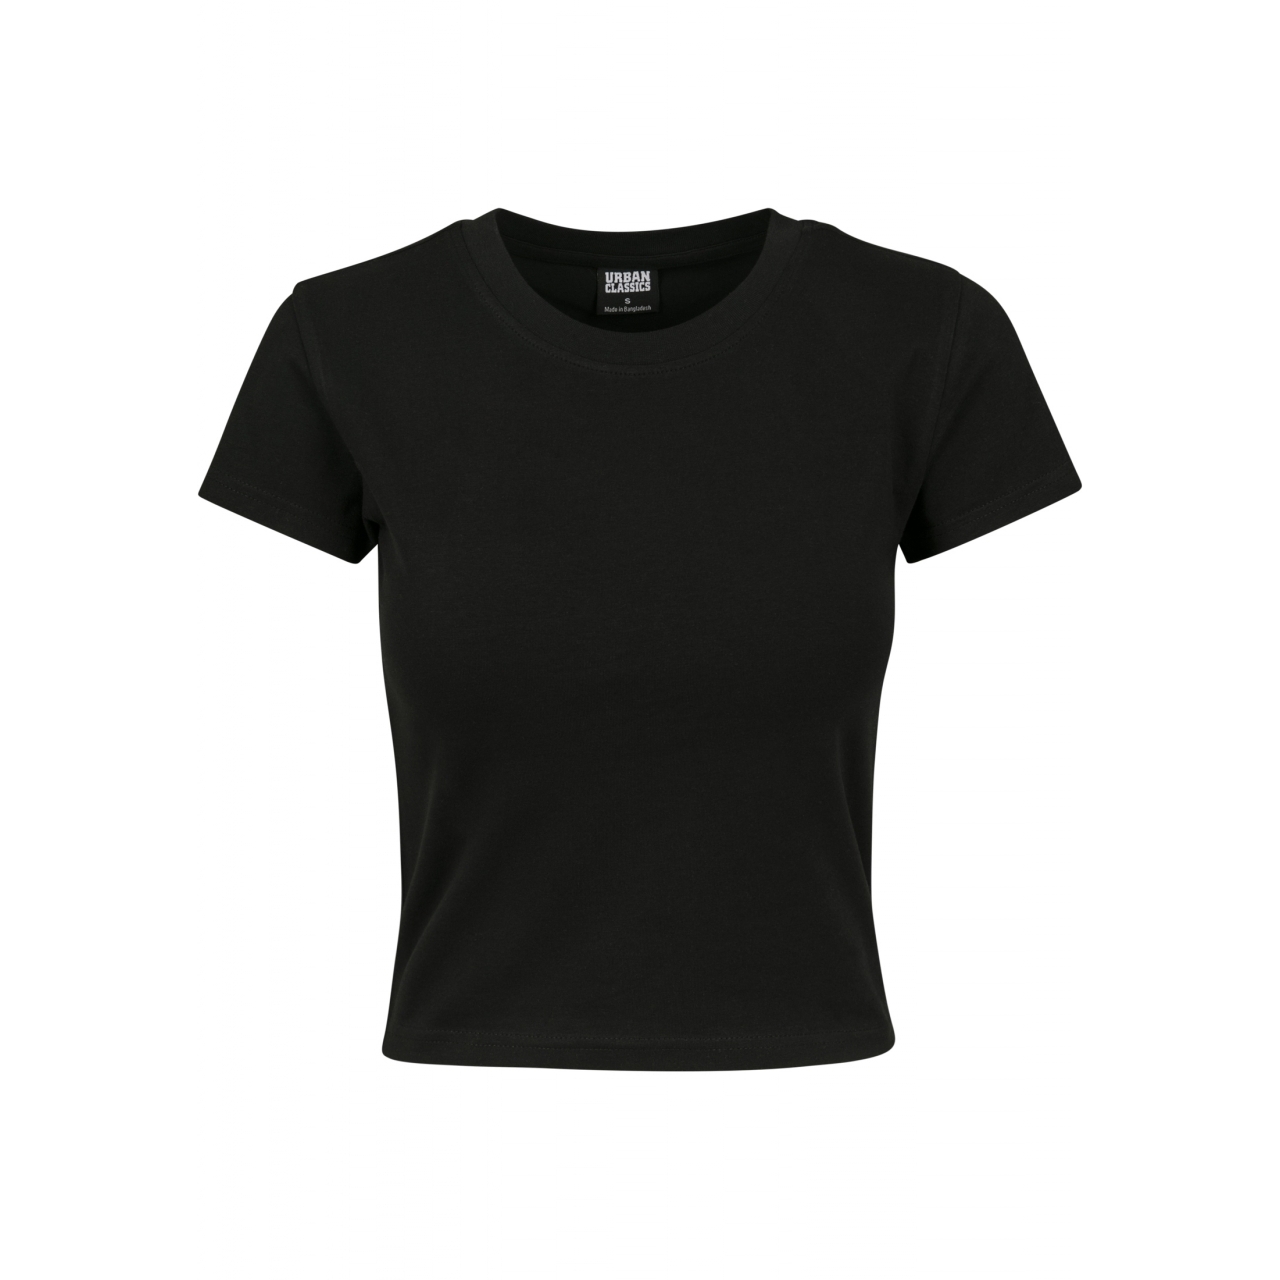 Triko dámské Urban Classics Ladies Stretch Jersey - černé, XXL